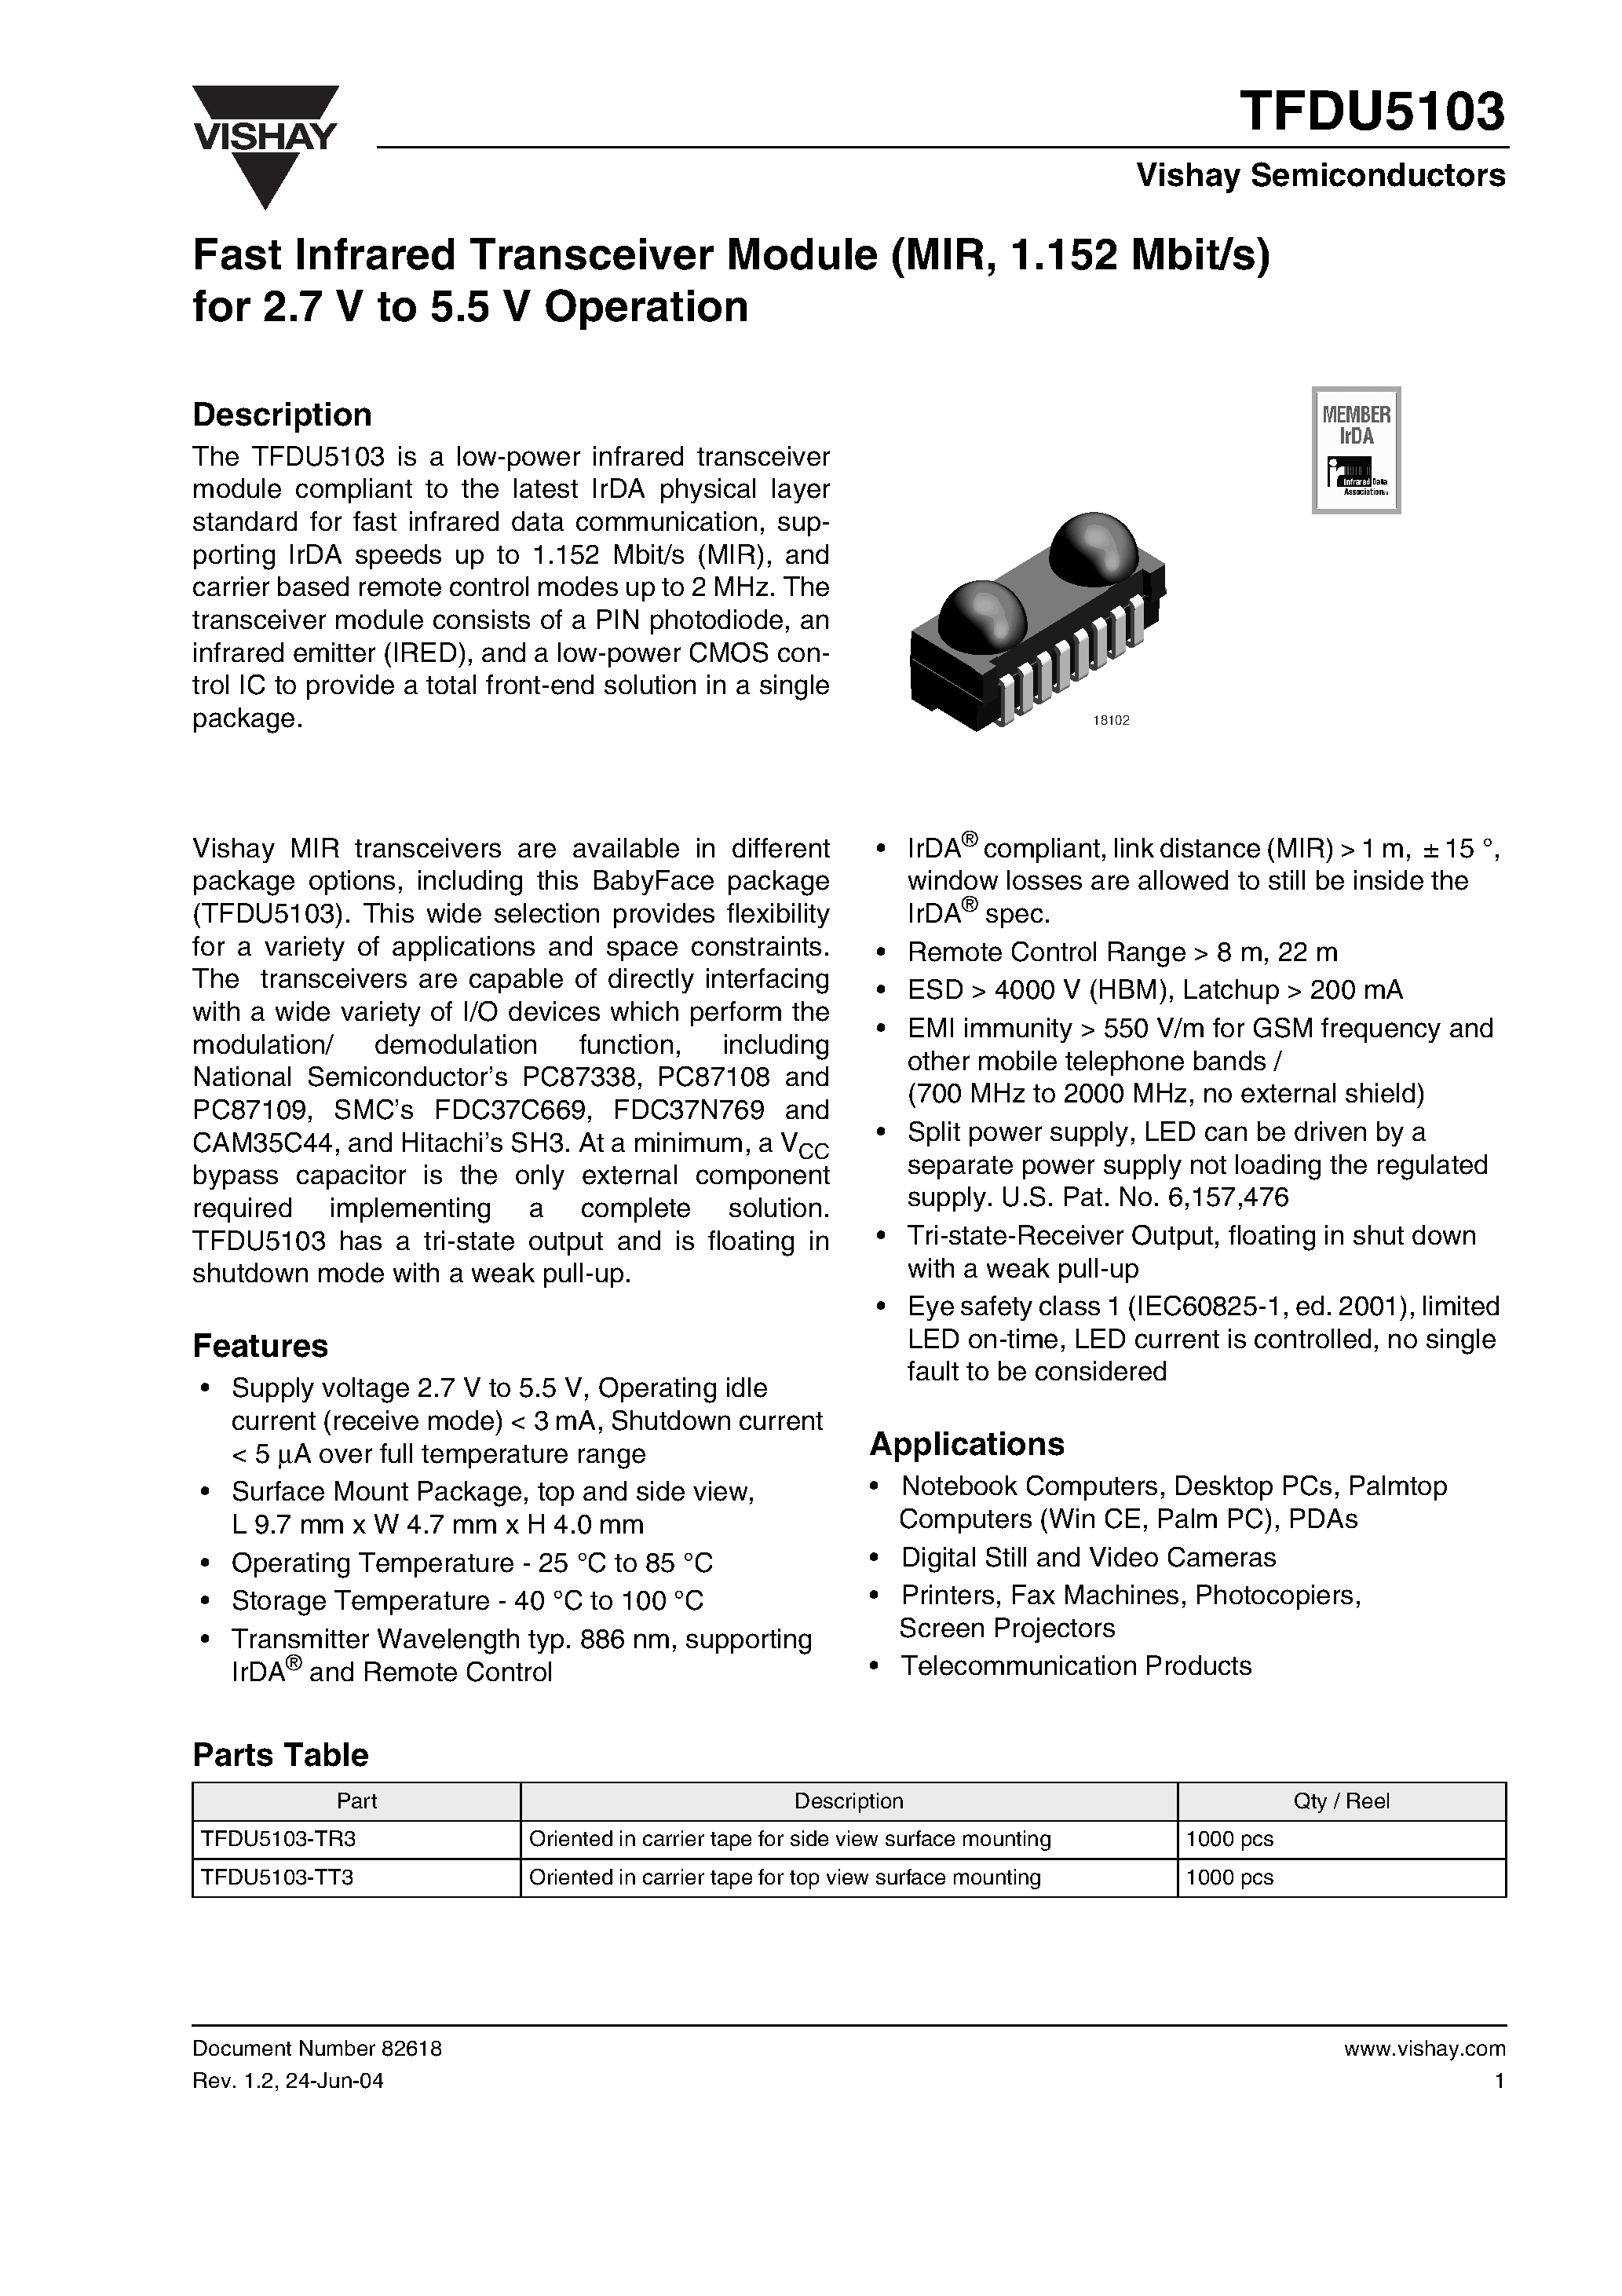 Даташит TFDU5103 - Fast Infrared Transceiver Module (MIR/ 1.152 Mbit/s) for 2.7 V to 5.5 V Operation страница 1